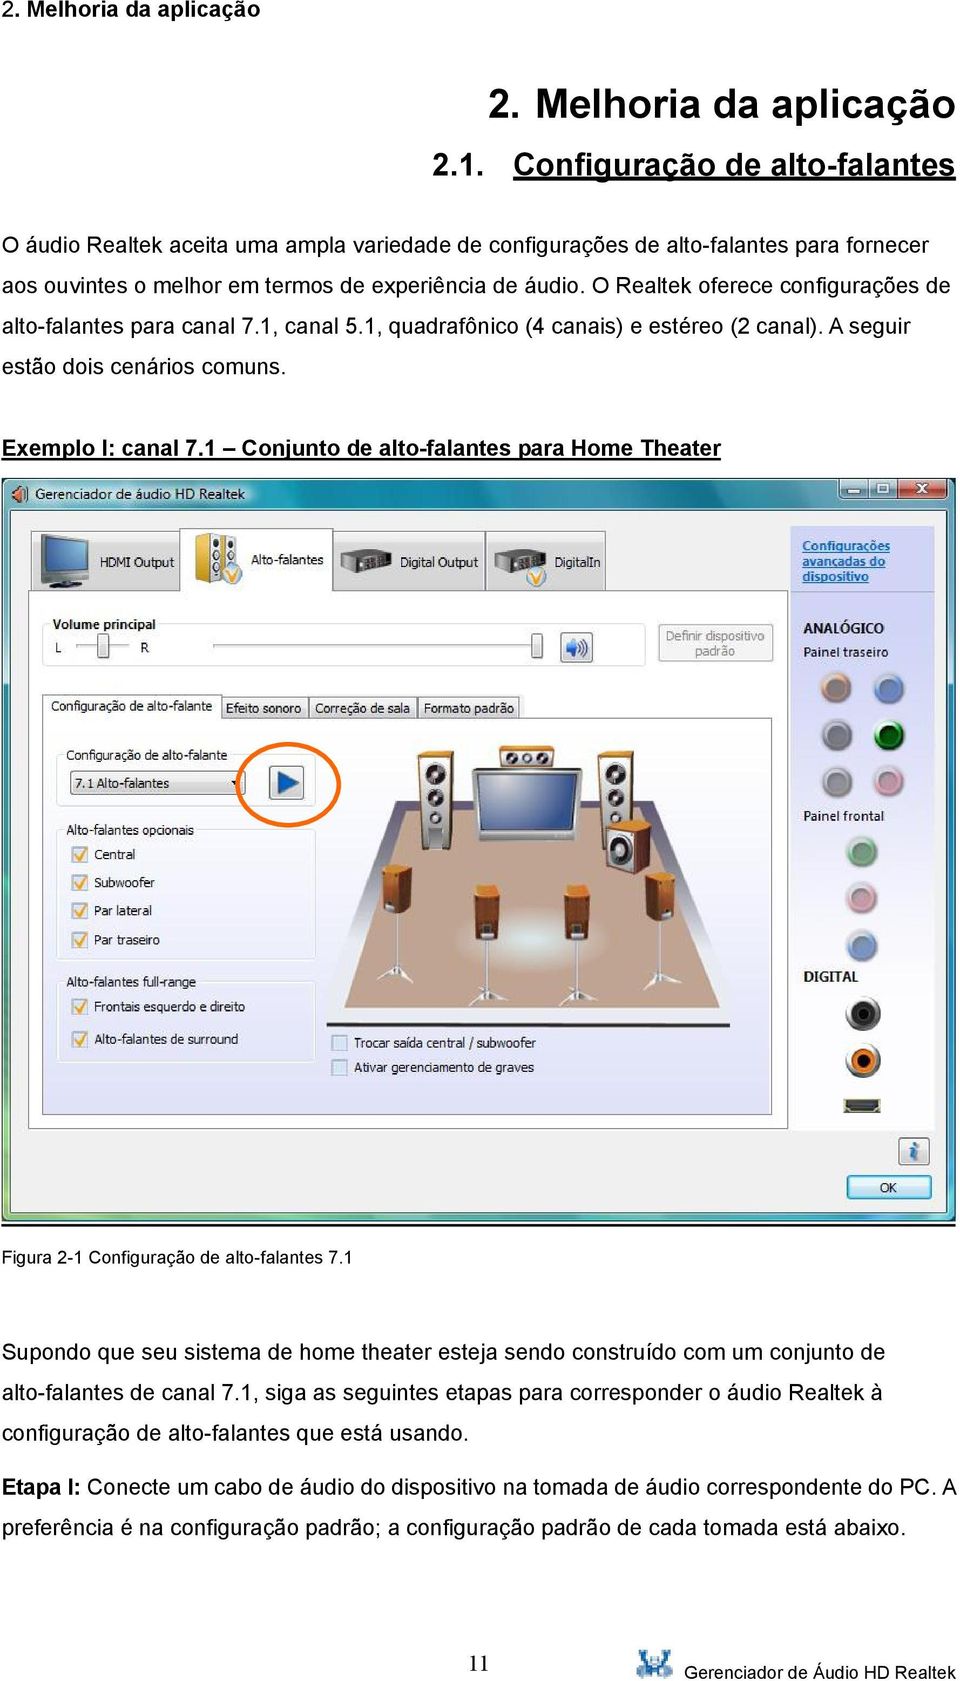 Gerenciador de Áudio HD Realtek Manual do Usuário para o Sistema  Operacional Vista - PDF Free Download